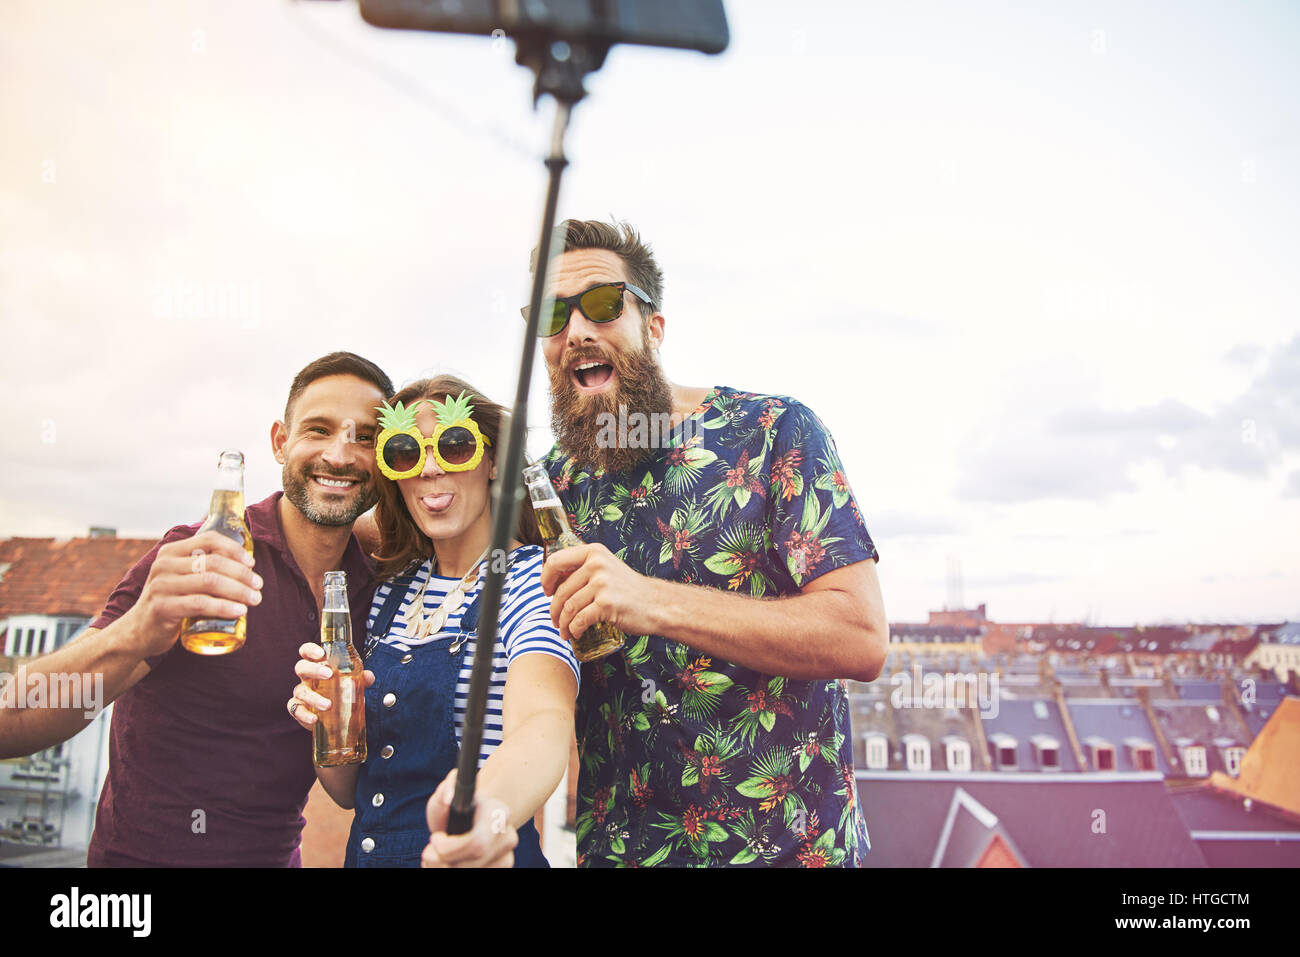 Gruppe von drei betrunkene Jugendliche trinken und nehmen Bilder von sich selbst auf Dach mit Selfie Stick auf Dach mit textfreiraum in hellen Himmel Stockfoto